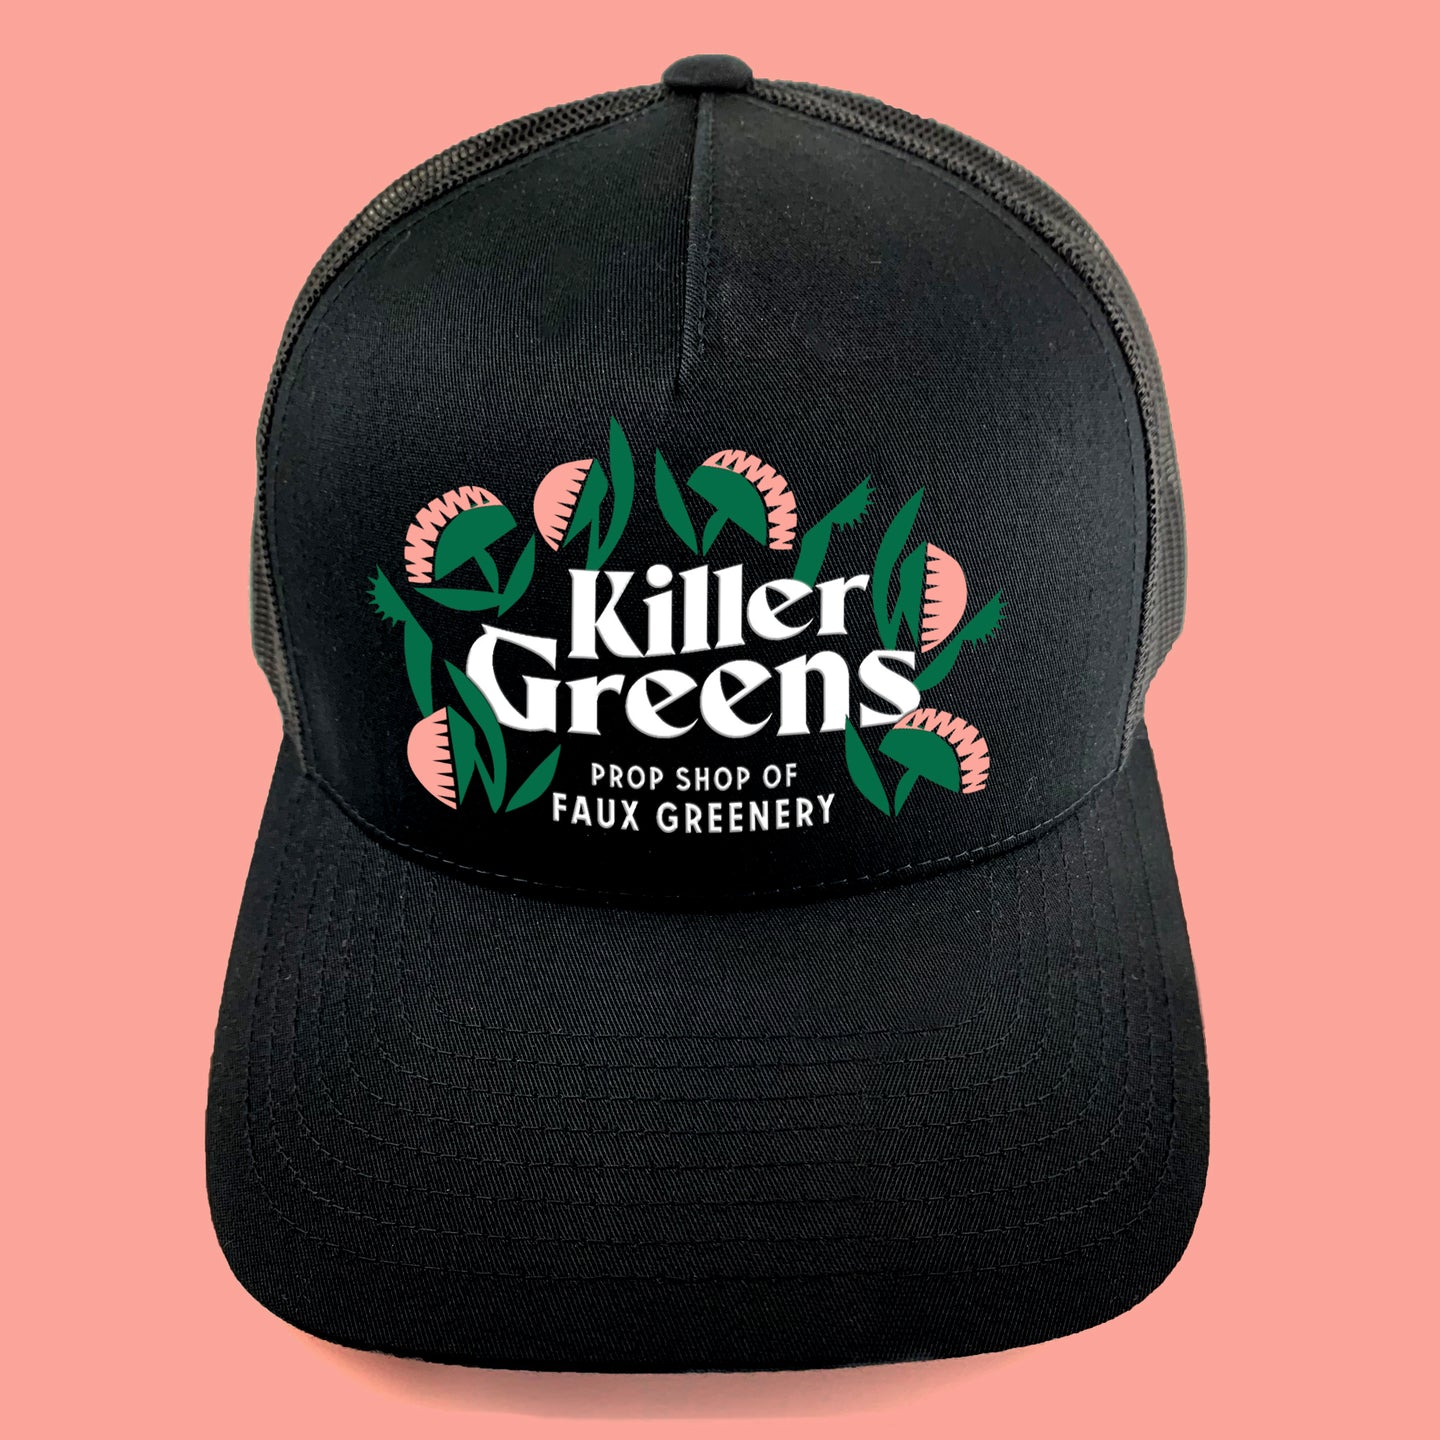 Killer Greens snapback hat